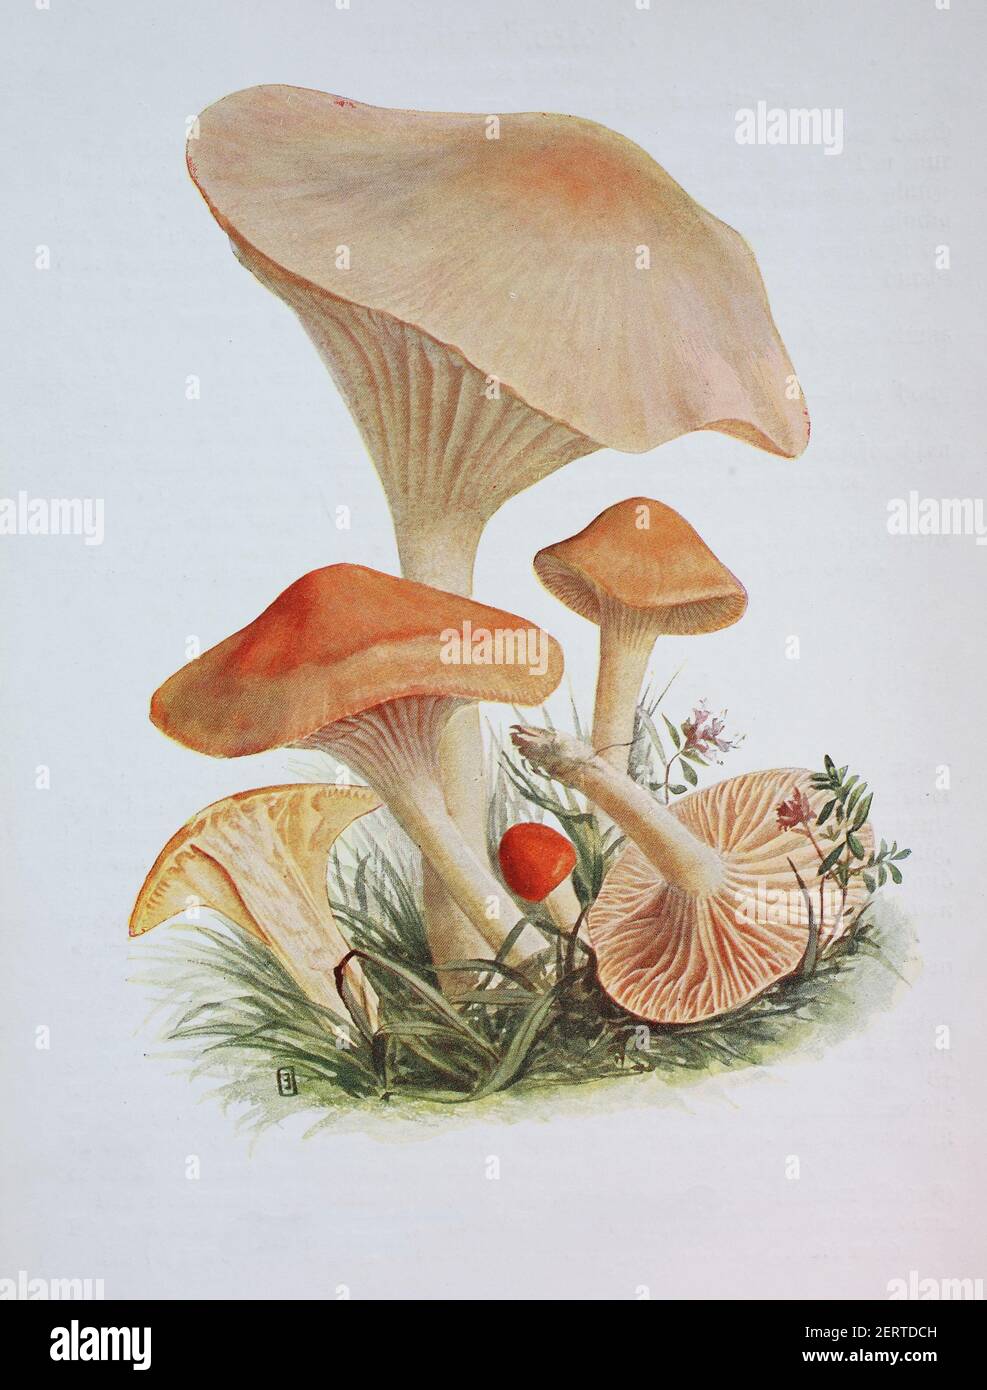 Cuphophyllus pratensis est une espèce d'agaric de la famille des Hygrophoraceae. On lui a donné le nom anglais recommandé de circap de prairie, a été appelé varioulement la citête de prairie, la ciboulette de saumon, et le beurre de Meadowcap, reproduction numérique d'une ilustration d'Emil Doerstling (1859-1940) Banque D'Images